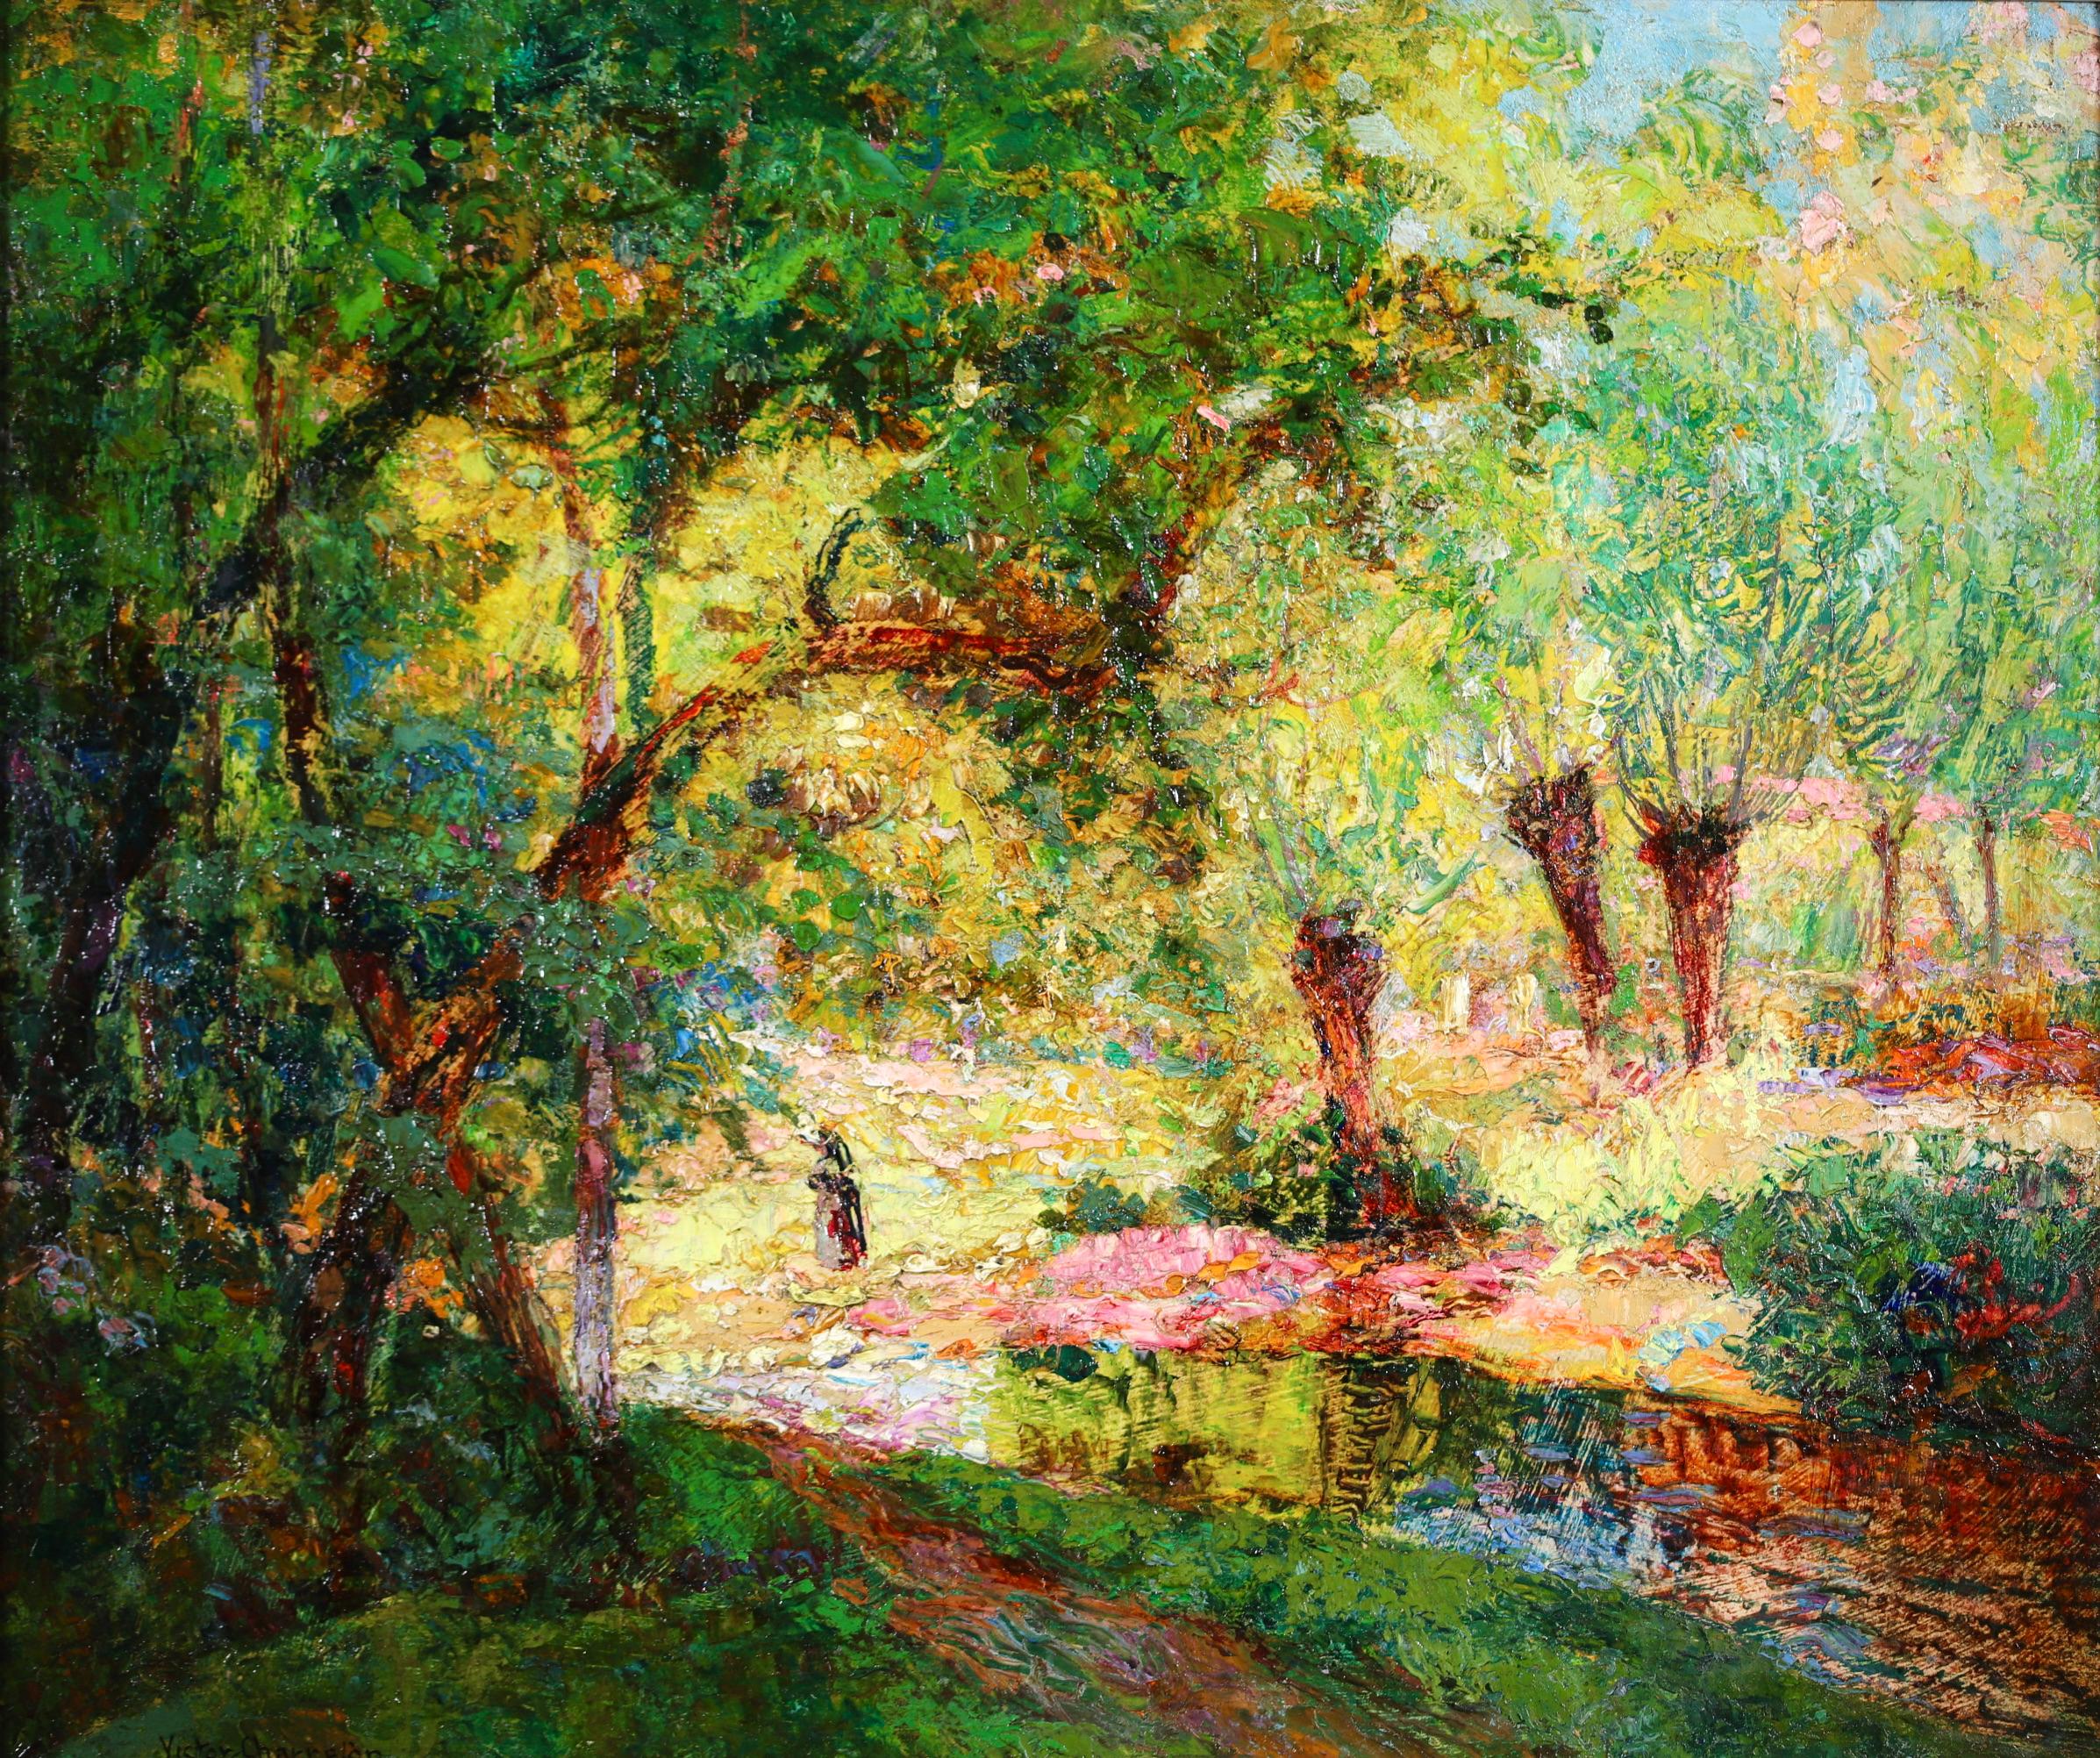 Huile sur panneau signée d'un personnage dans un paysage, circa 1910, du peintre post-impressionniste français Victor Charreton. L'œuvre représente un personnage solitaire se promenant au bord d'un ruisseau dans une zone boisée par une belle journée